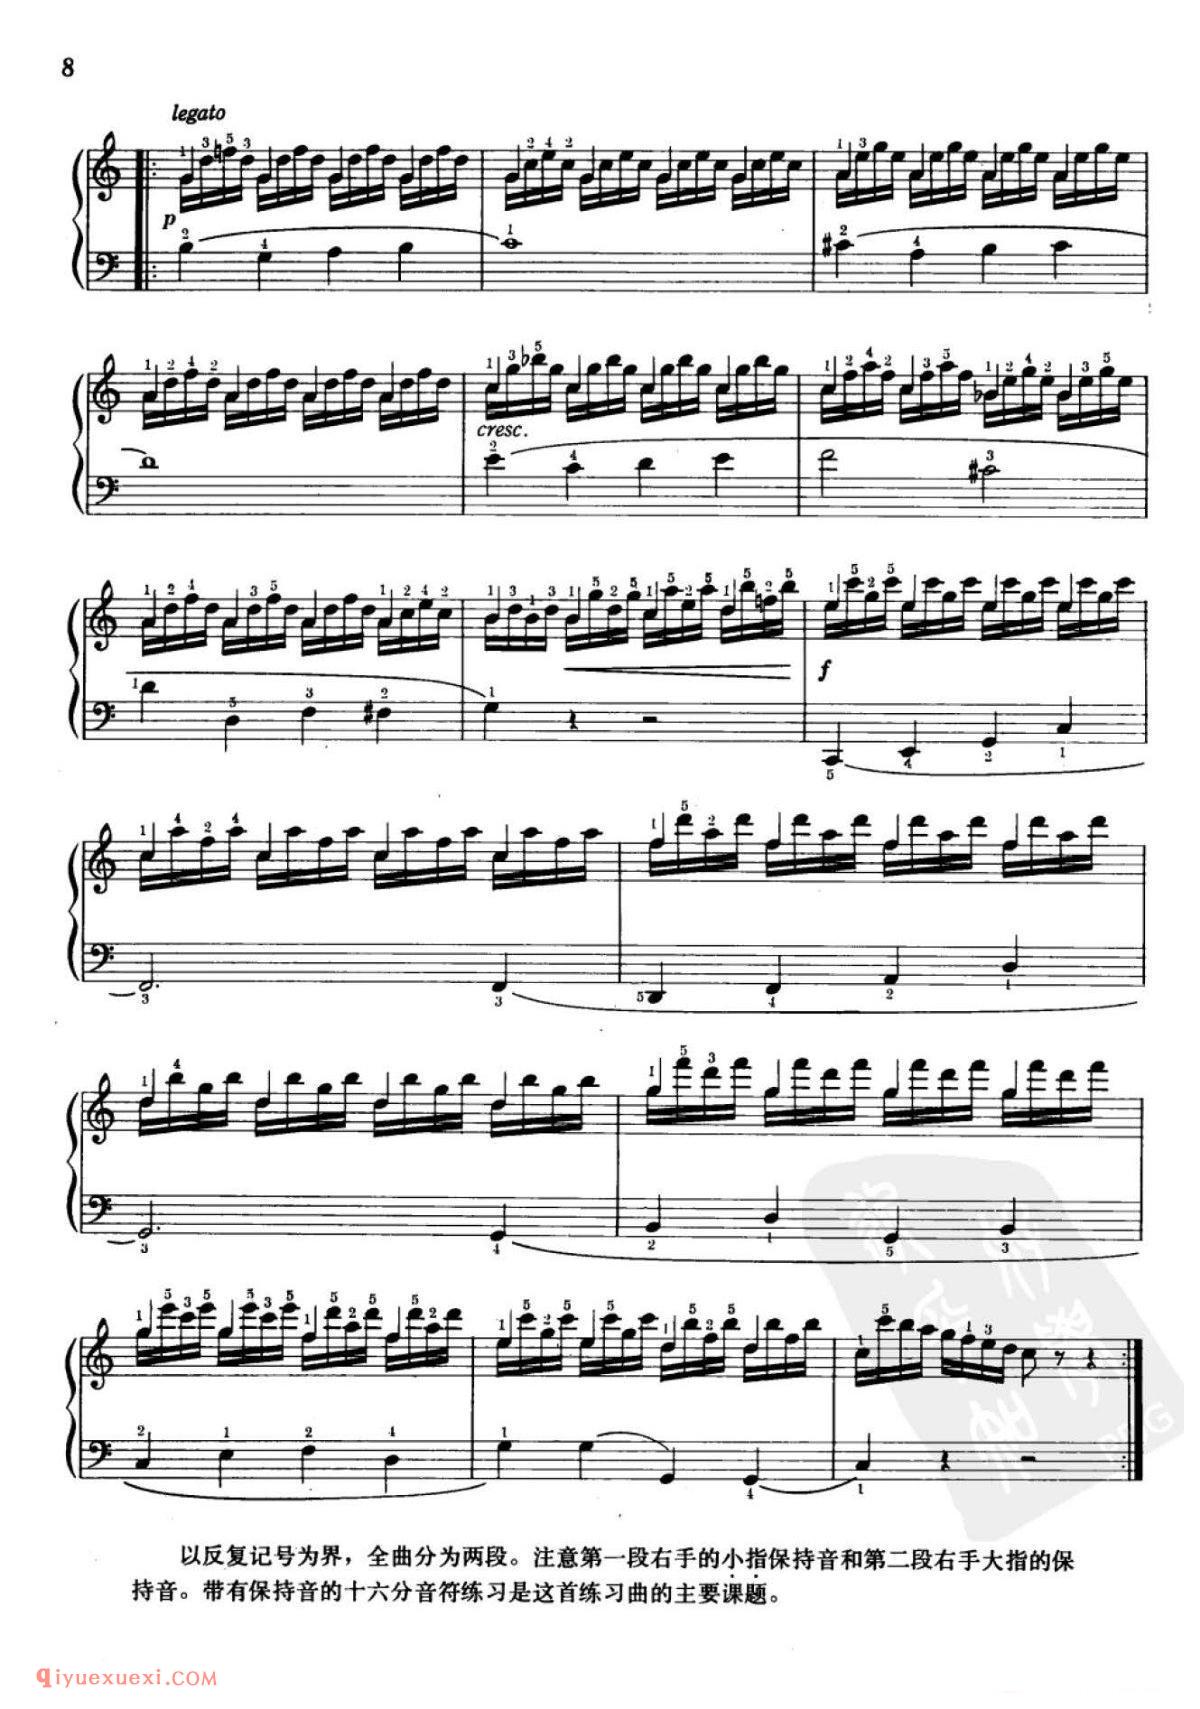 车尔尼钢琴流畅练习曲作品849(1-30首)方百里